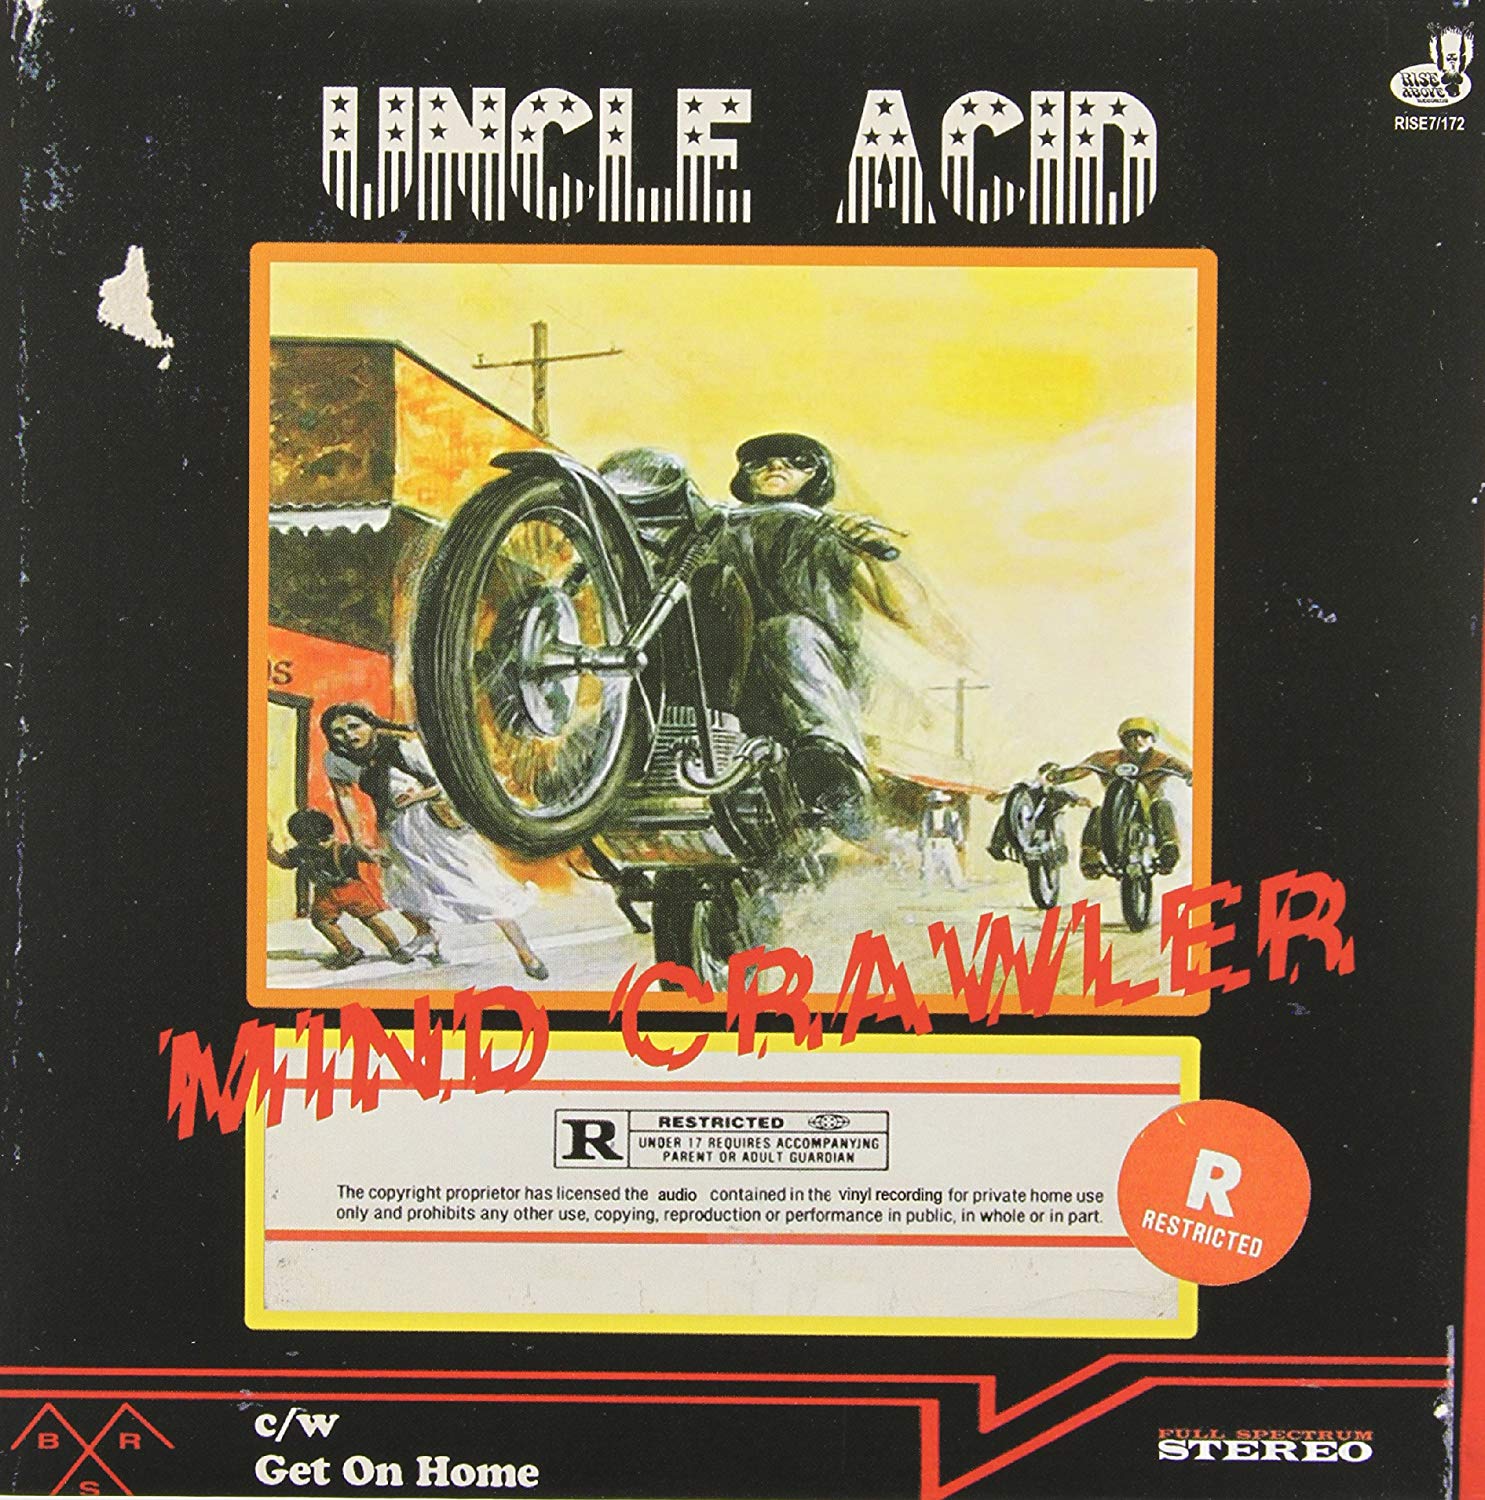 Uncle Acid & The Deadbeats "Mind Crawler" 7" Vinyl